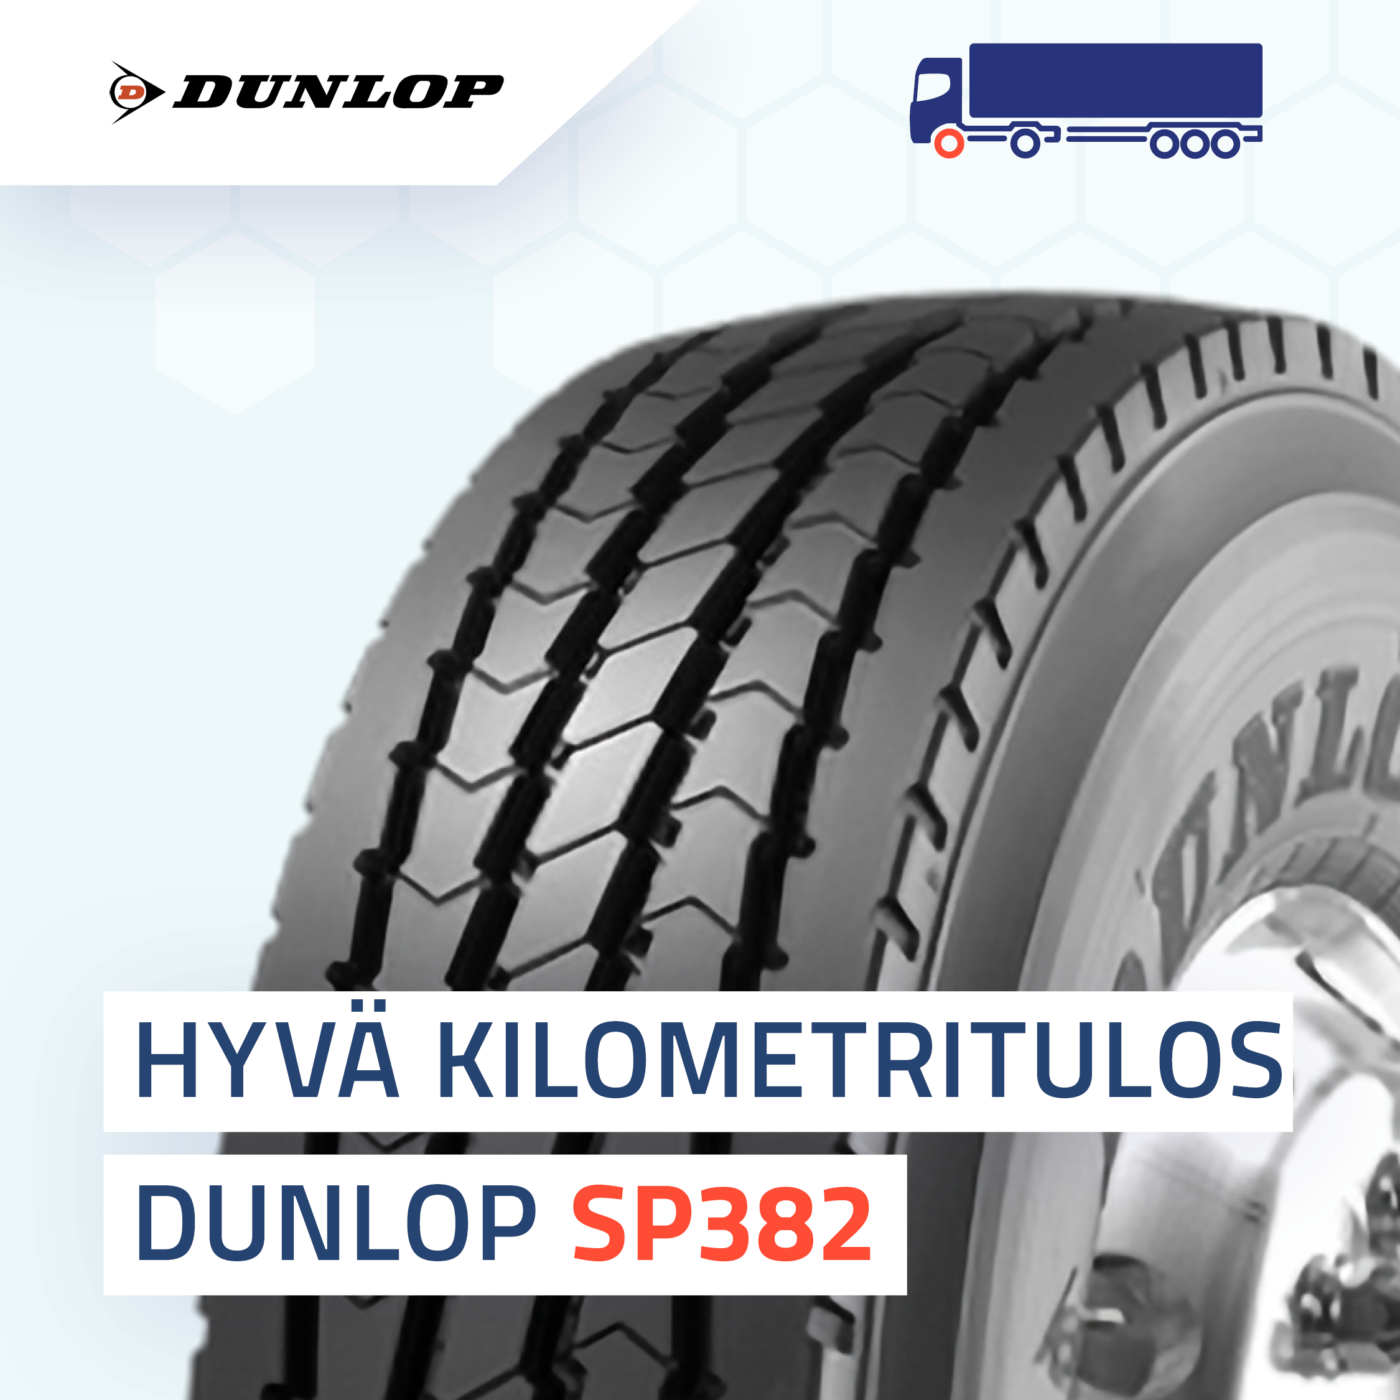 Dunlop SP382